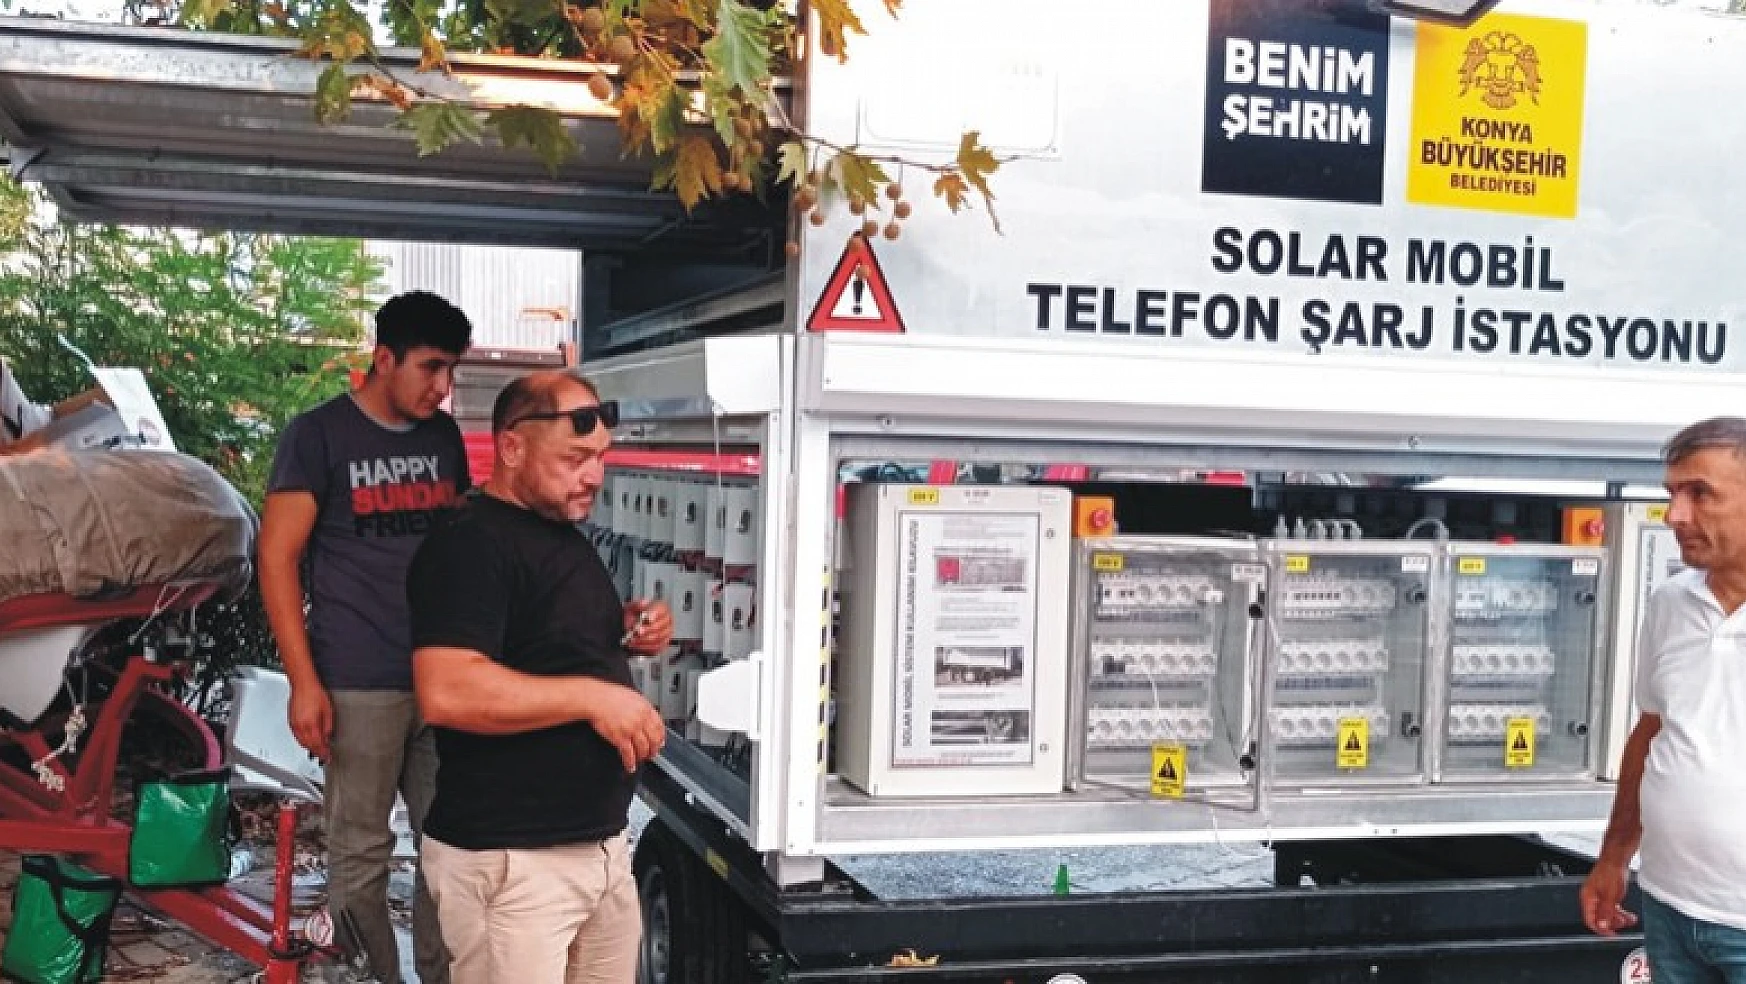 Konya Büyükşehir Manavgat'a solar mobil telefon şarj istasyonu kurdu